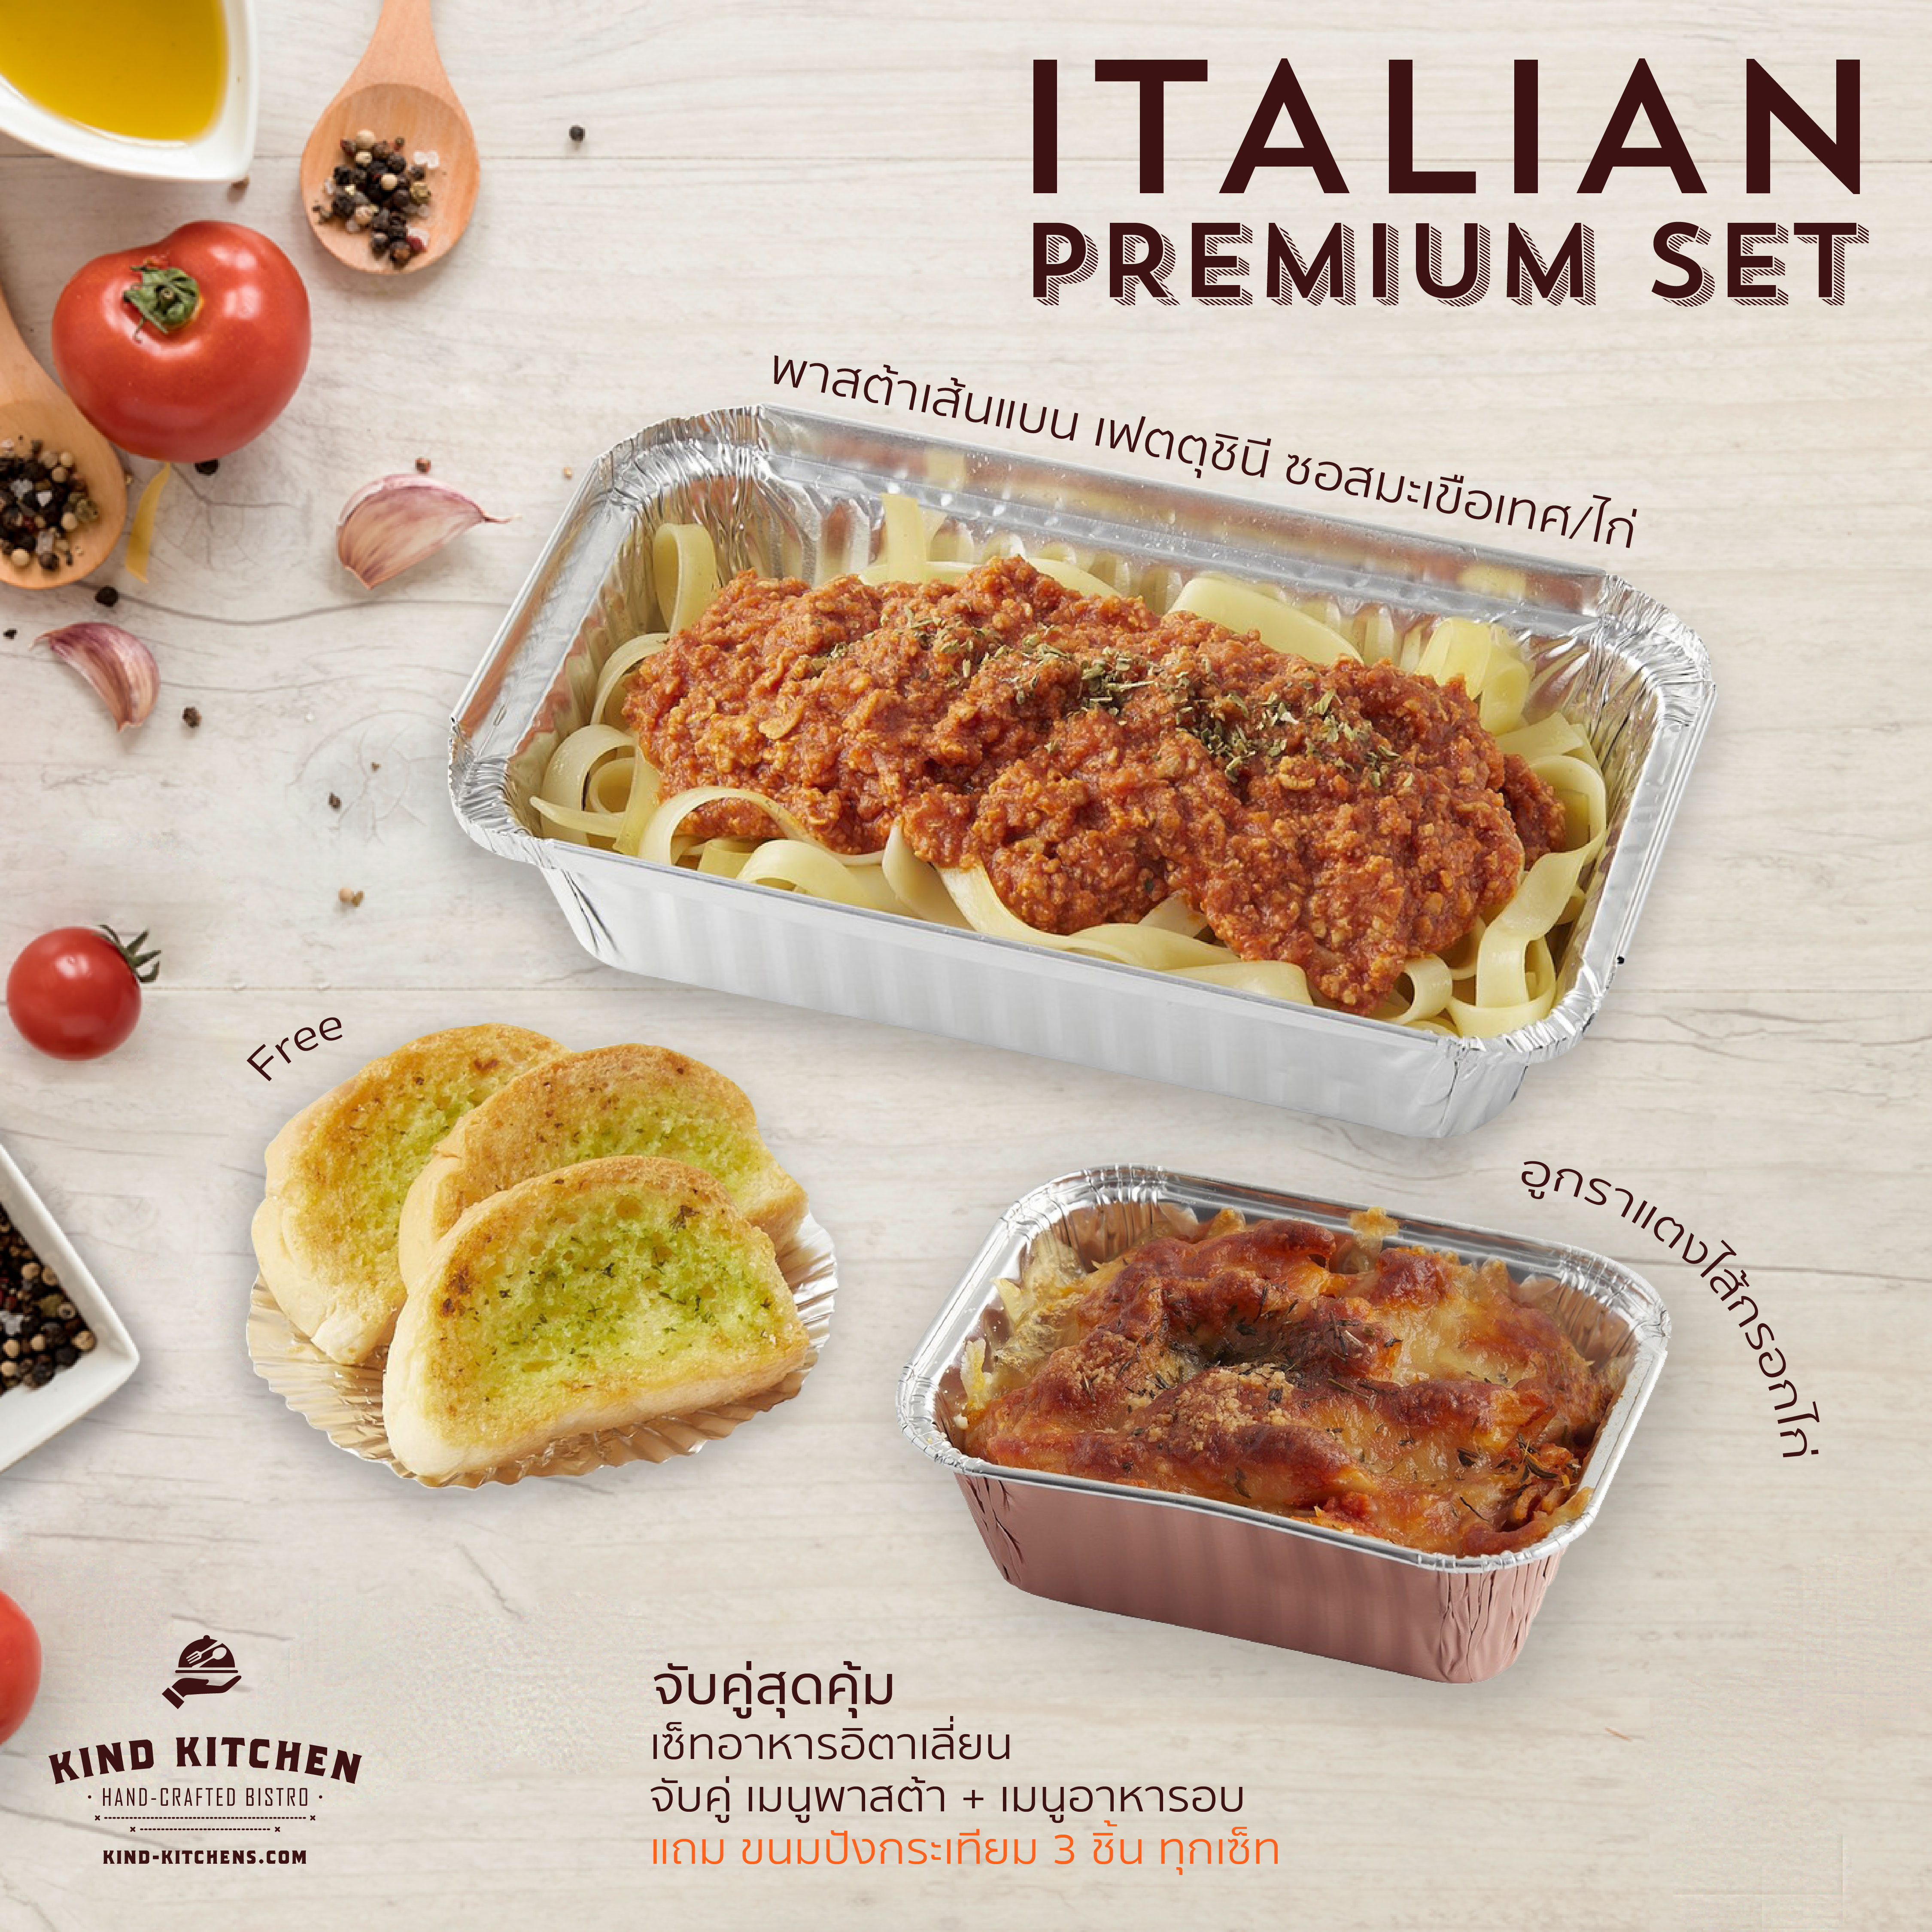 เซ็ทอาหารอิตาเลี่ยน Italian Premium Set_พาสต้าเส้นแบน เฟตตุชินี ซอสมะเขือเทศ/ไก่ + อูกราแตงไส้กรอกไก่